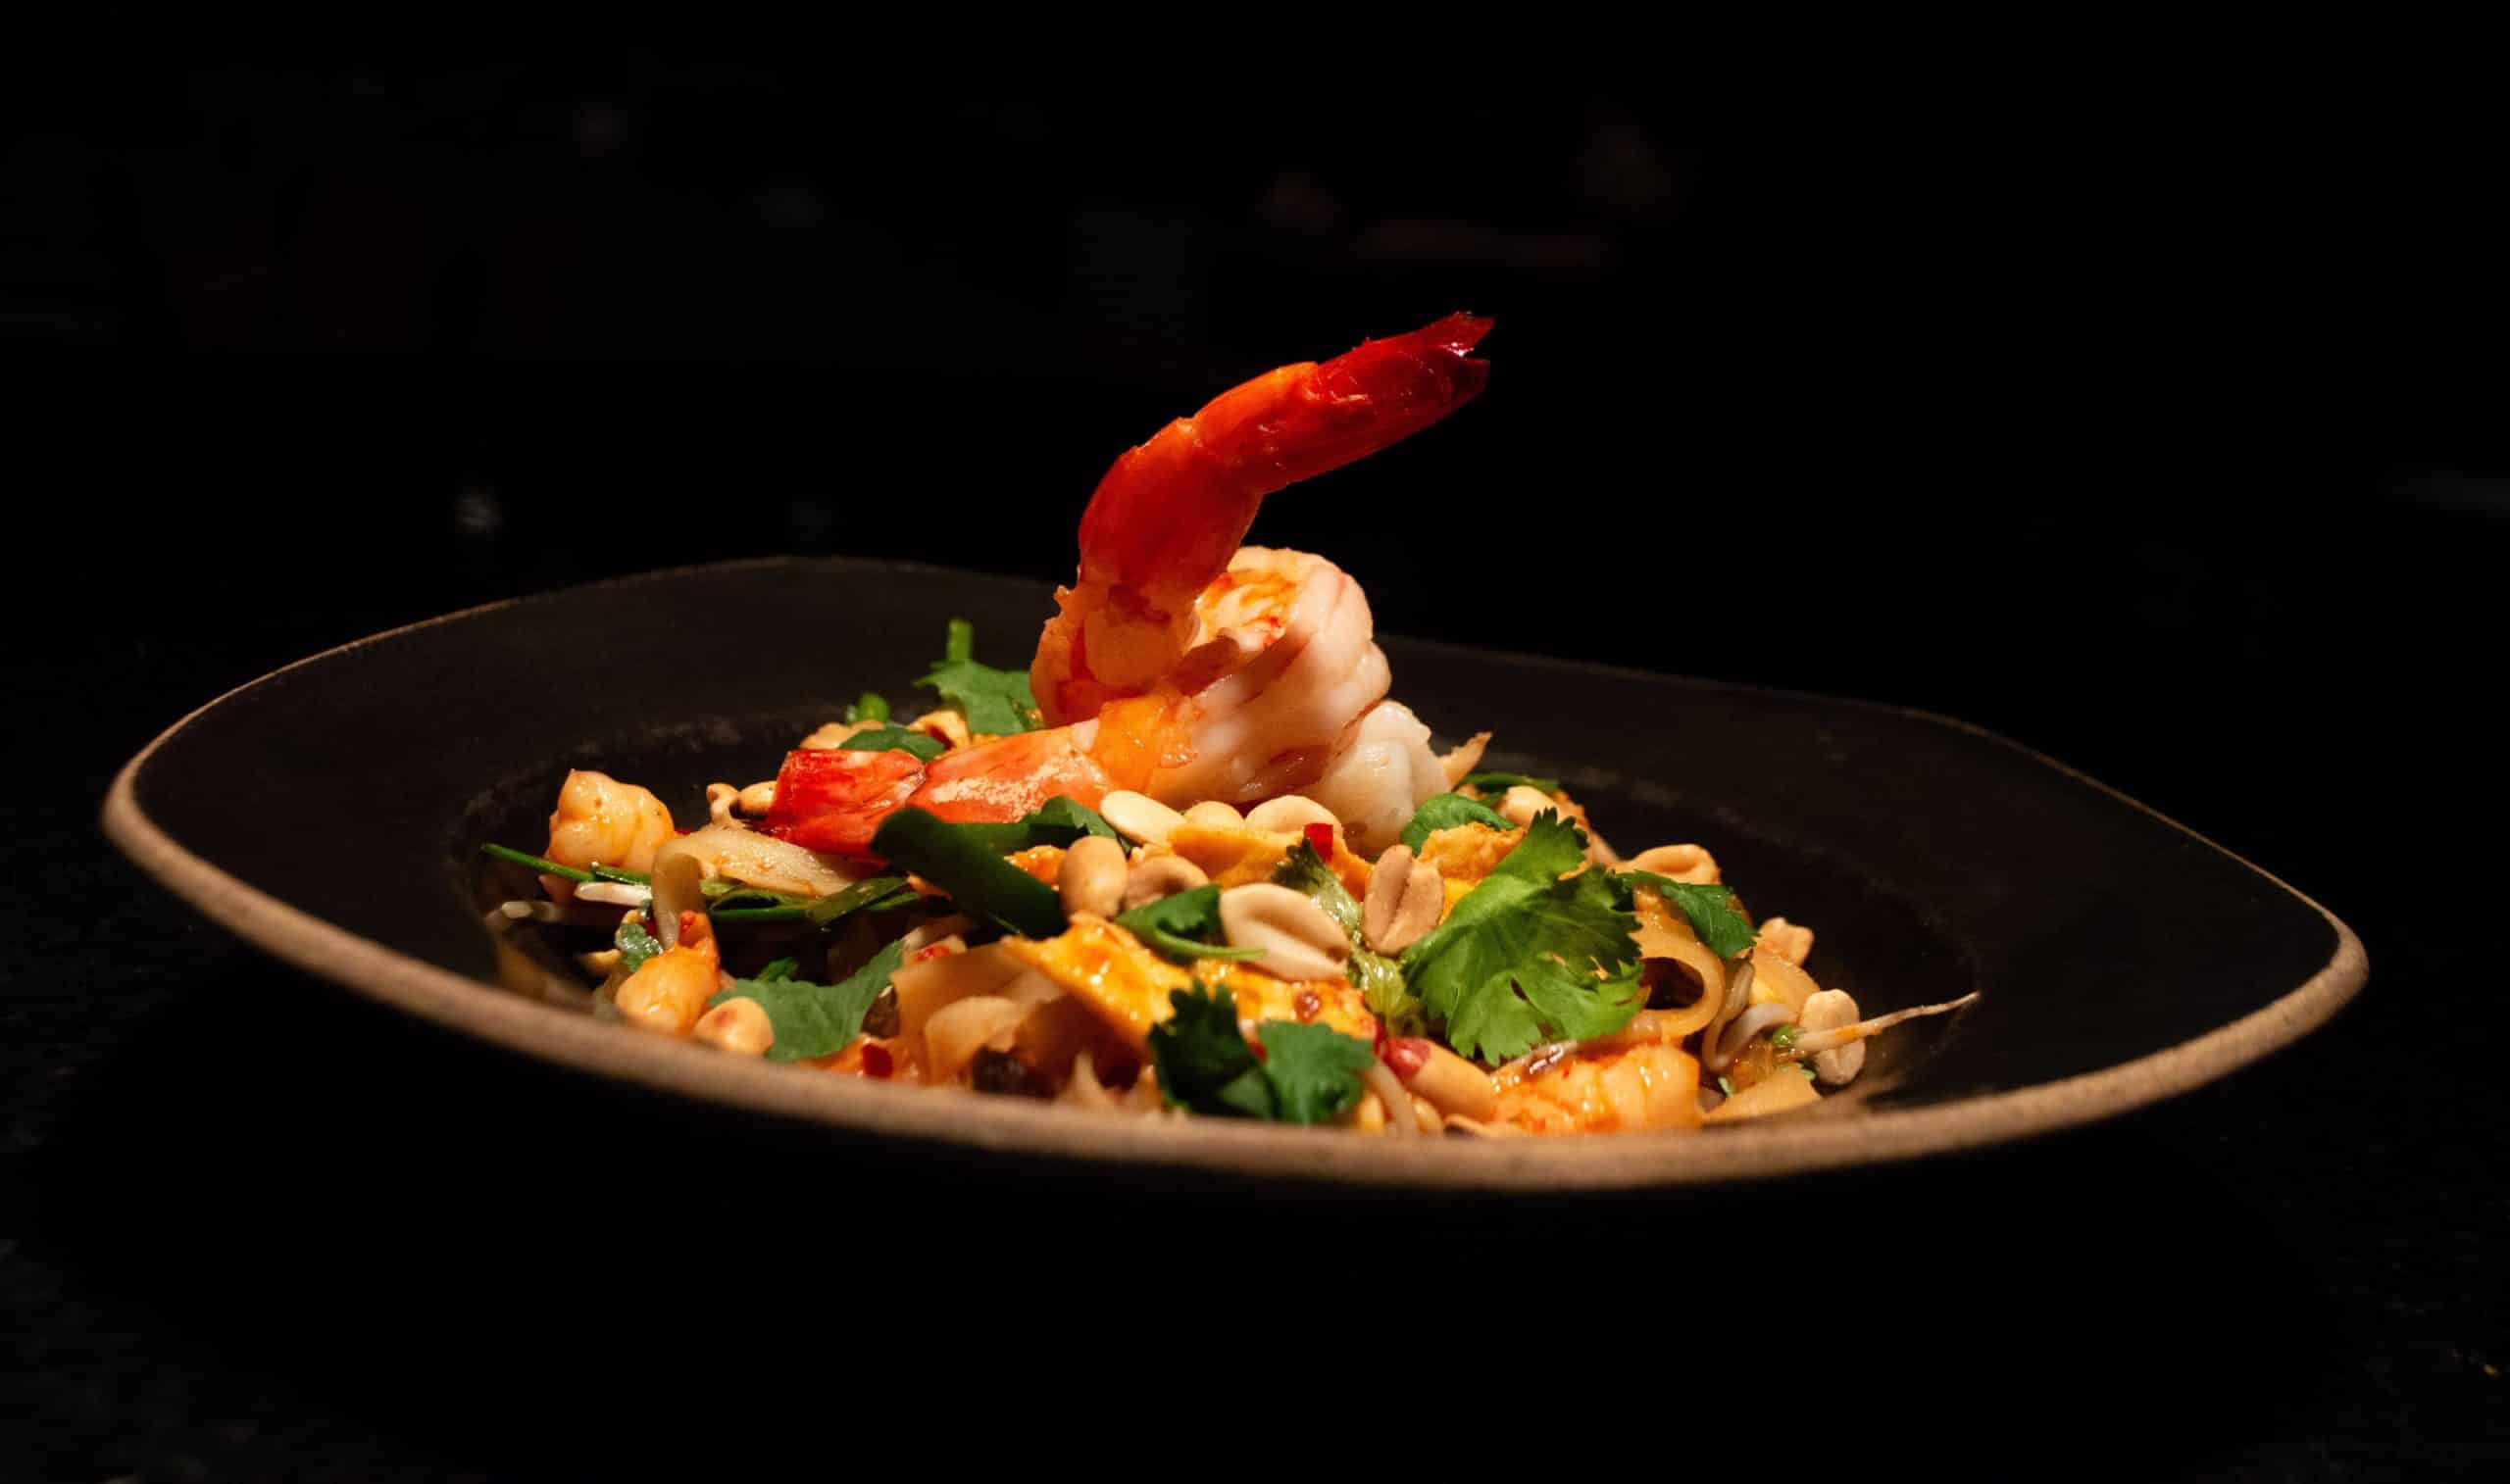 foto mostra um pad thai em um prato fundo preto. o pad thai é um apimentado talharim de arroz que acompanha ovo, camarão, broto de feijão, pimenta, coentro, amendoim e especiarias!